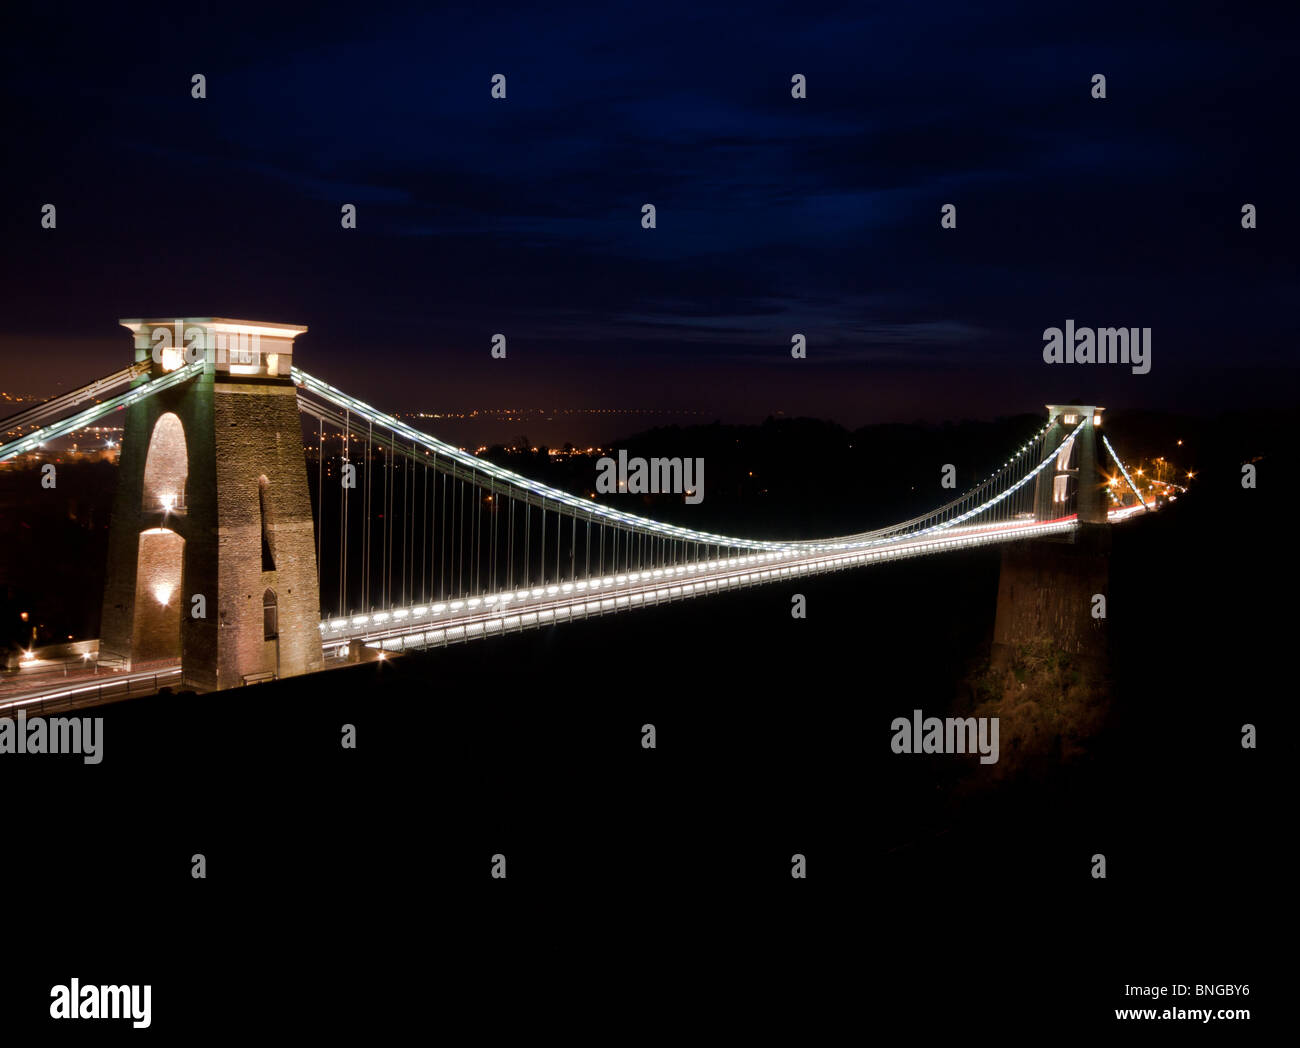 Eine Nacht Zeit erschossen von einem beleuchteten Clifton Suspension Bridge, Bristol. Dieser berühmte Brücke wurde entwickelt un d gebaut von Isambard Kingdom Brunel Stockfoto